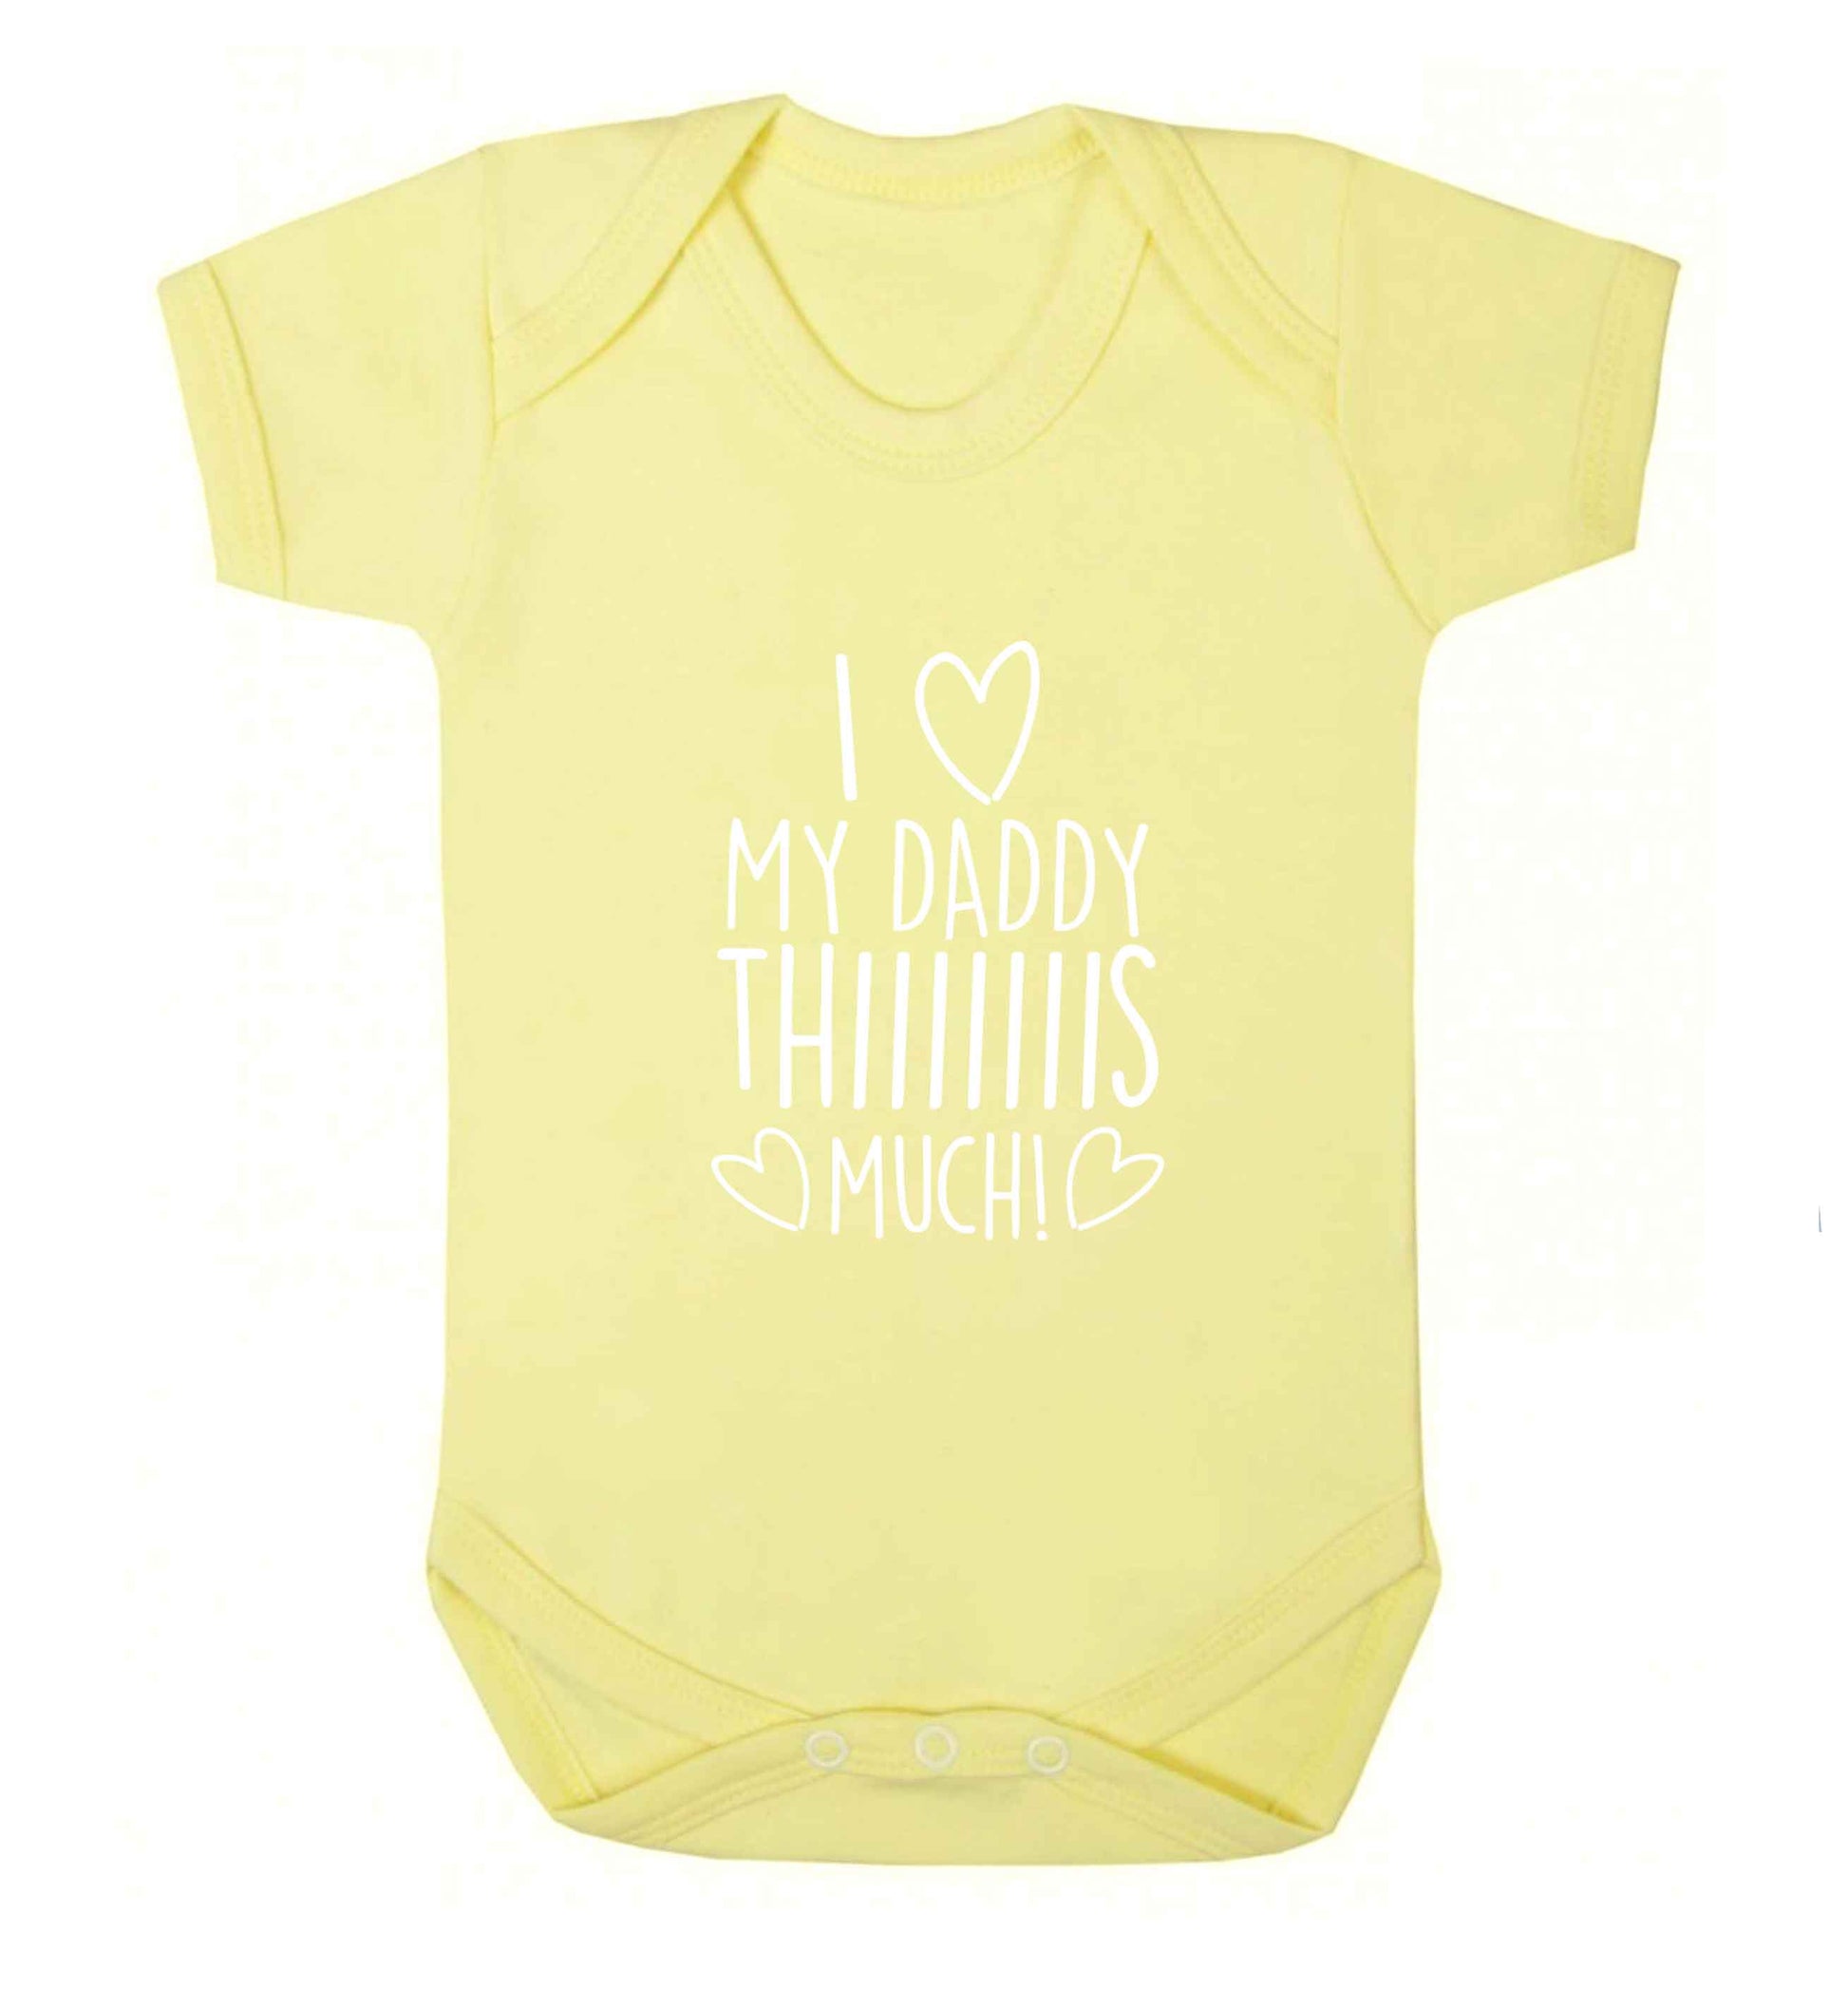 I love my daddy thiiiiis much! baby vest pale yellow 18-24 months